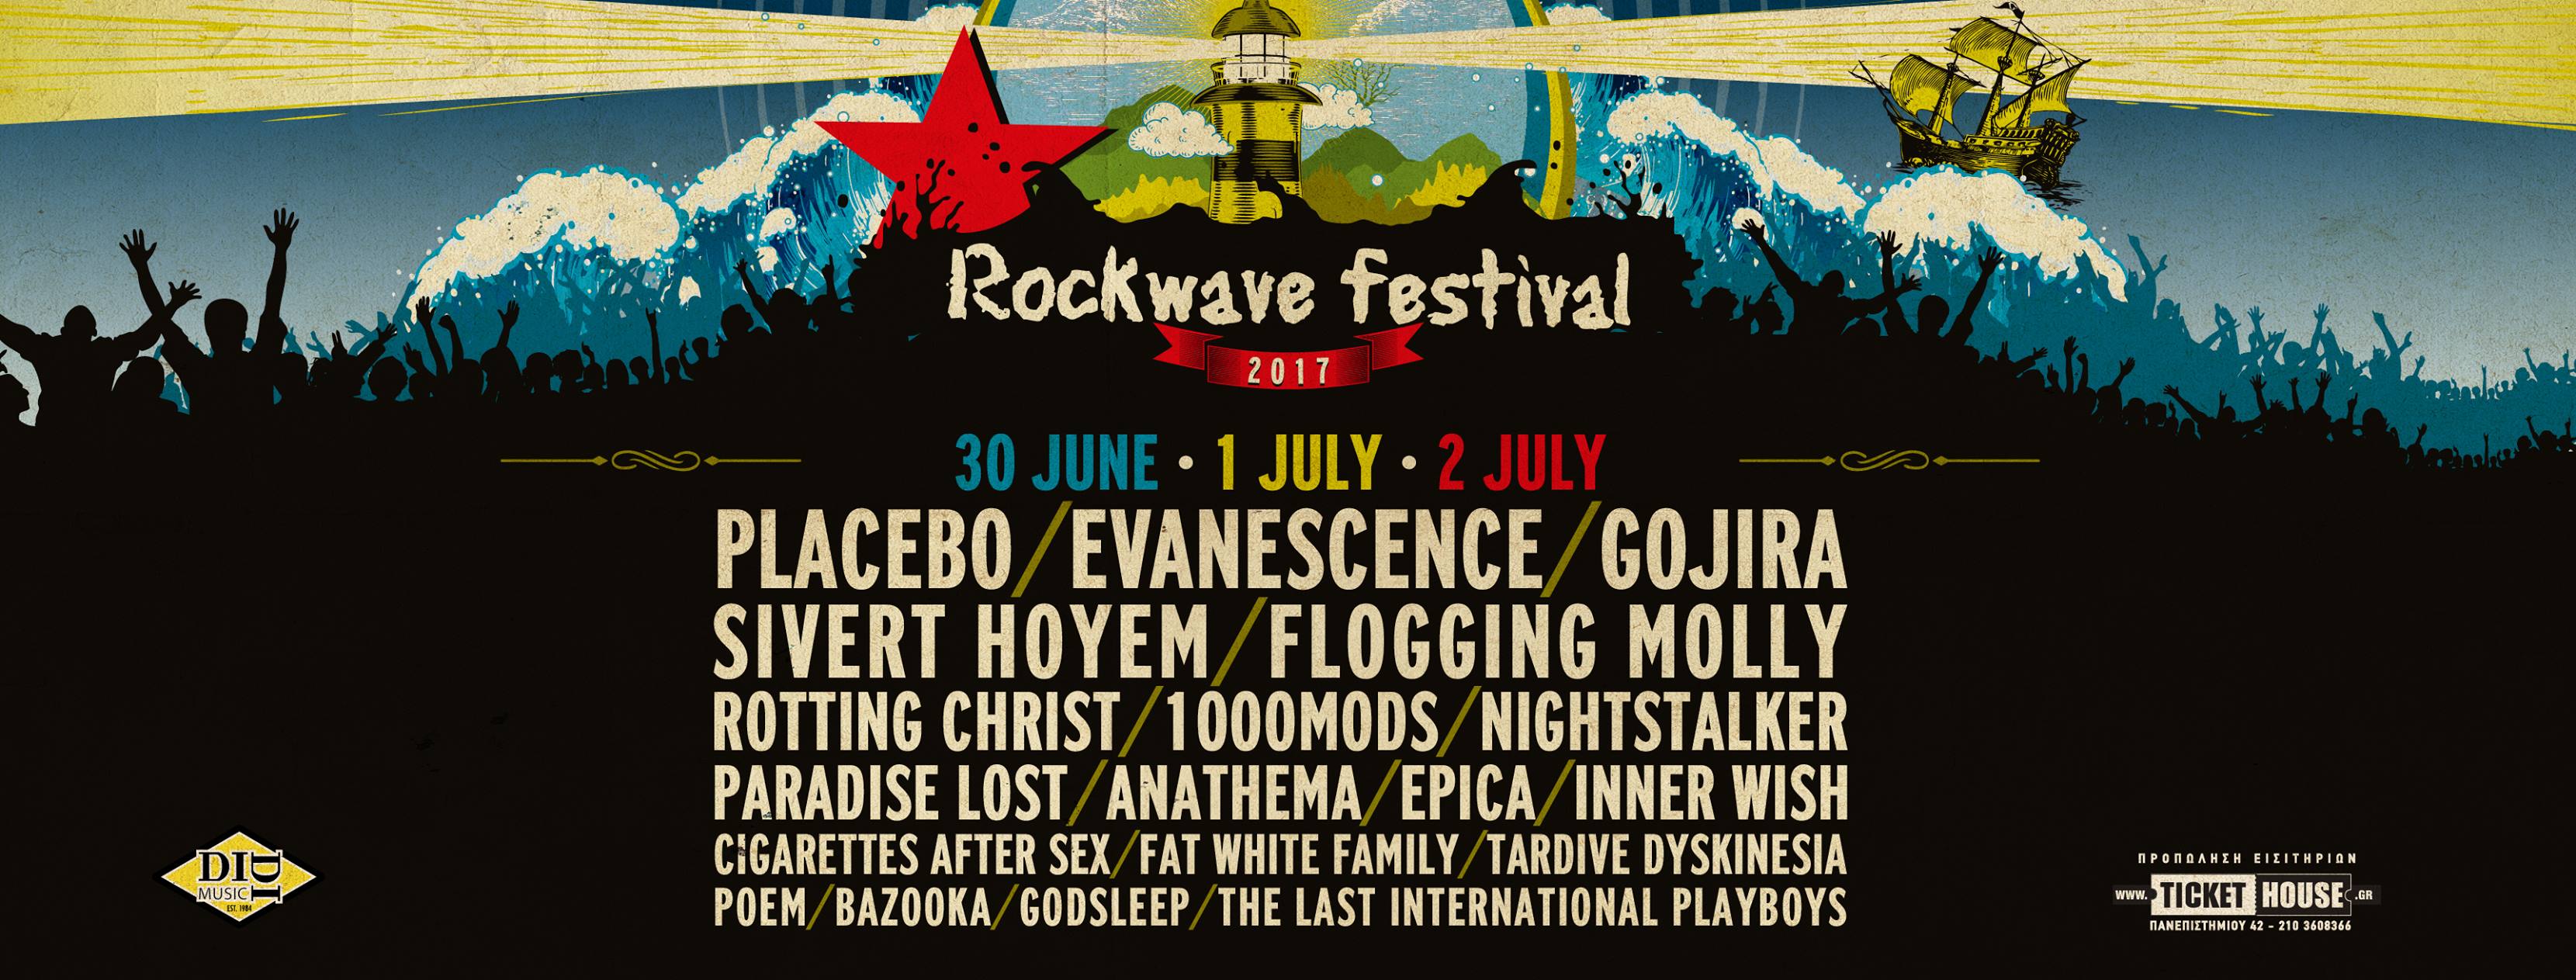 Το Rockwave Festival ξεκινάει το ταξίδι του!